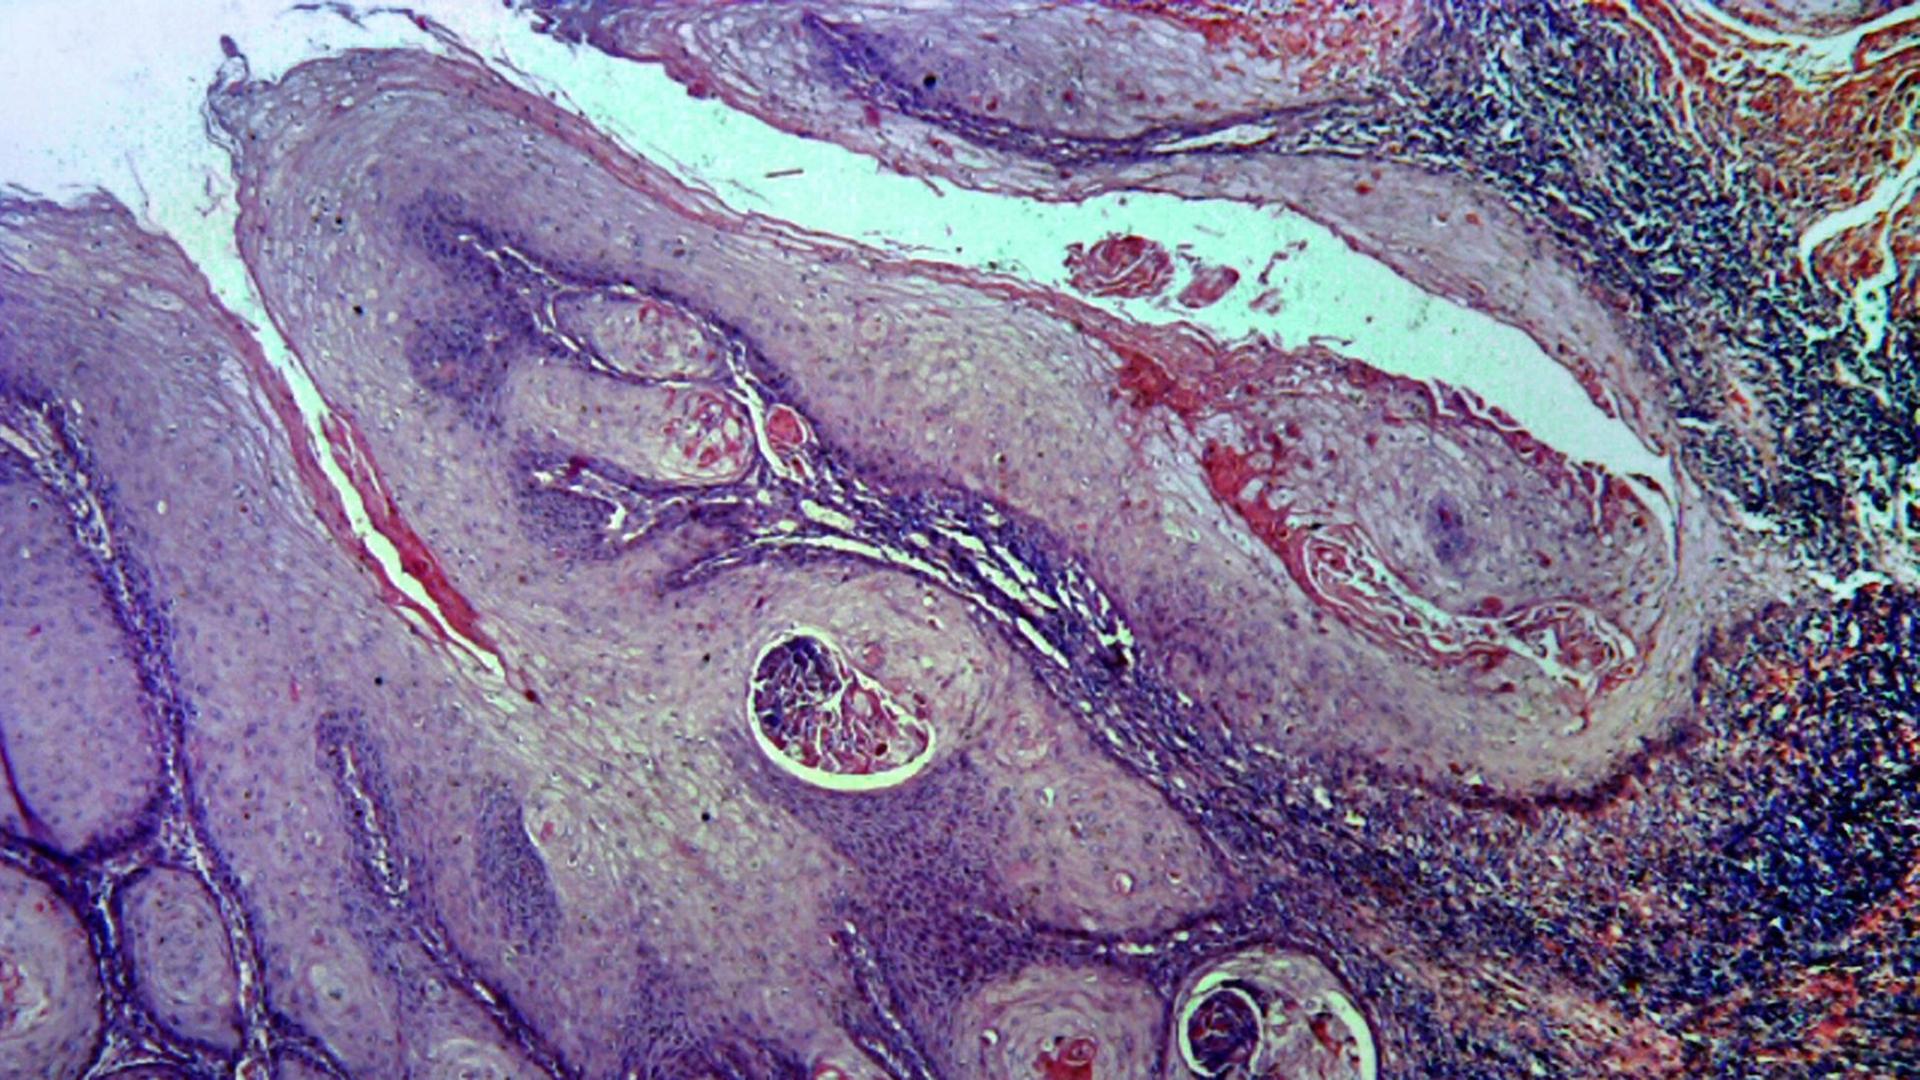 Violett-rötliches, schlierenartig angeordnetes Zellmaterial in einer mikroskopischen Ansicht, die den Eindruck von abstrakter Kunst entstehen lässt.